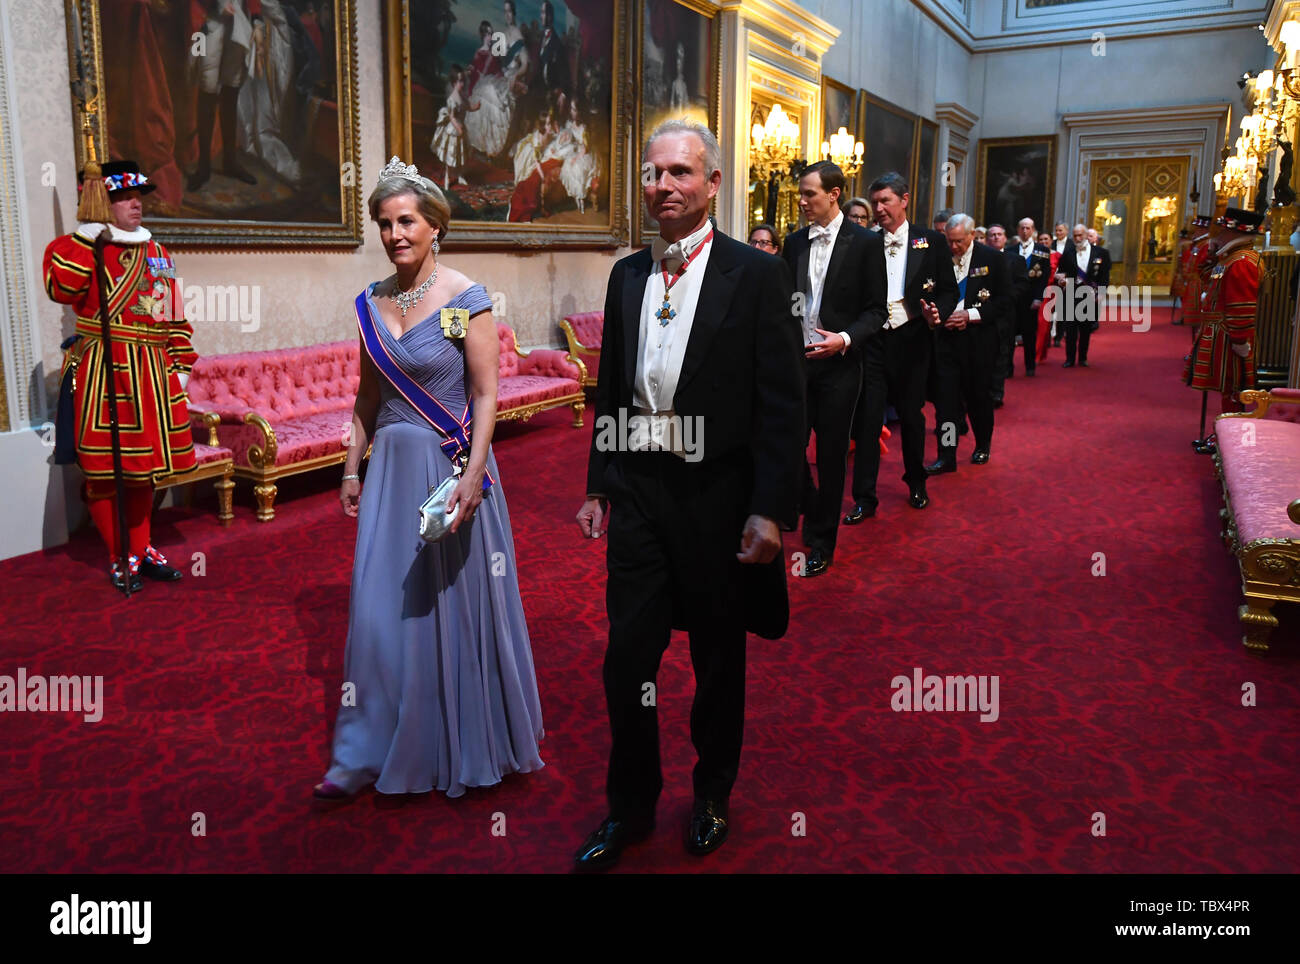 La Comtesse de Wessex et le Chancelier du duché de Lancaster, David Lidington arrivent par la galerie est au cours de la banquet d'État au palais de Buckingham, à Londres, le premier jour de l'US President's trois jour visite d'état du Royaume-Uni. Banque D'Images